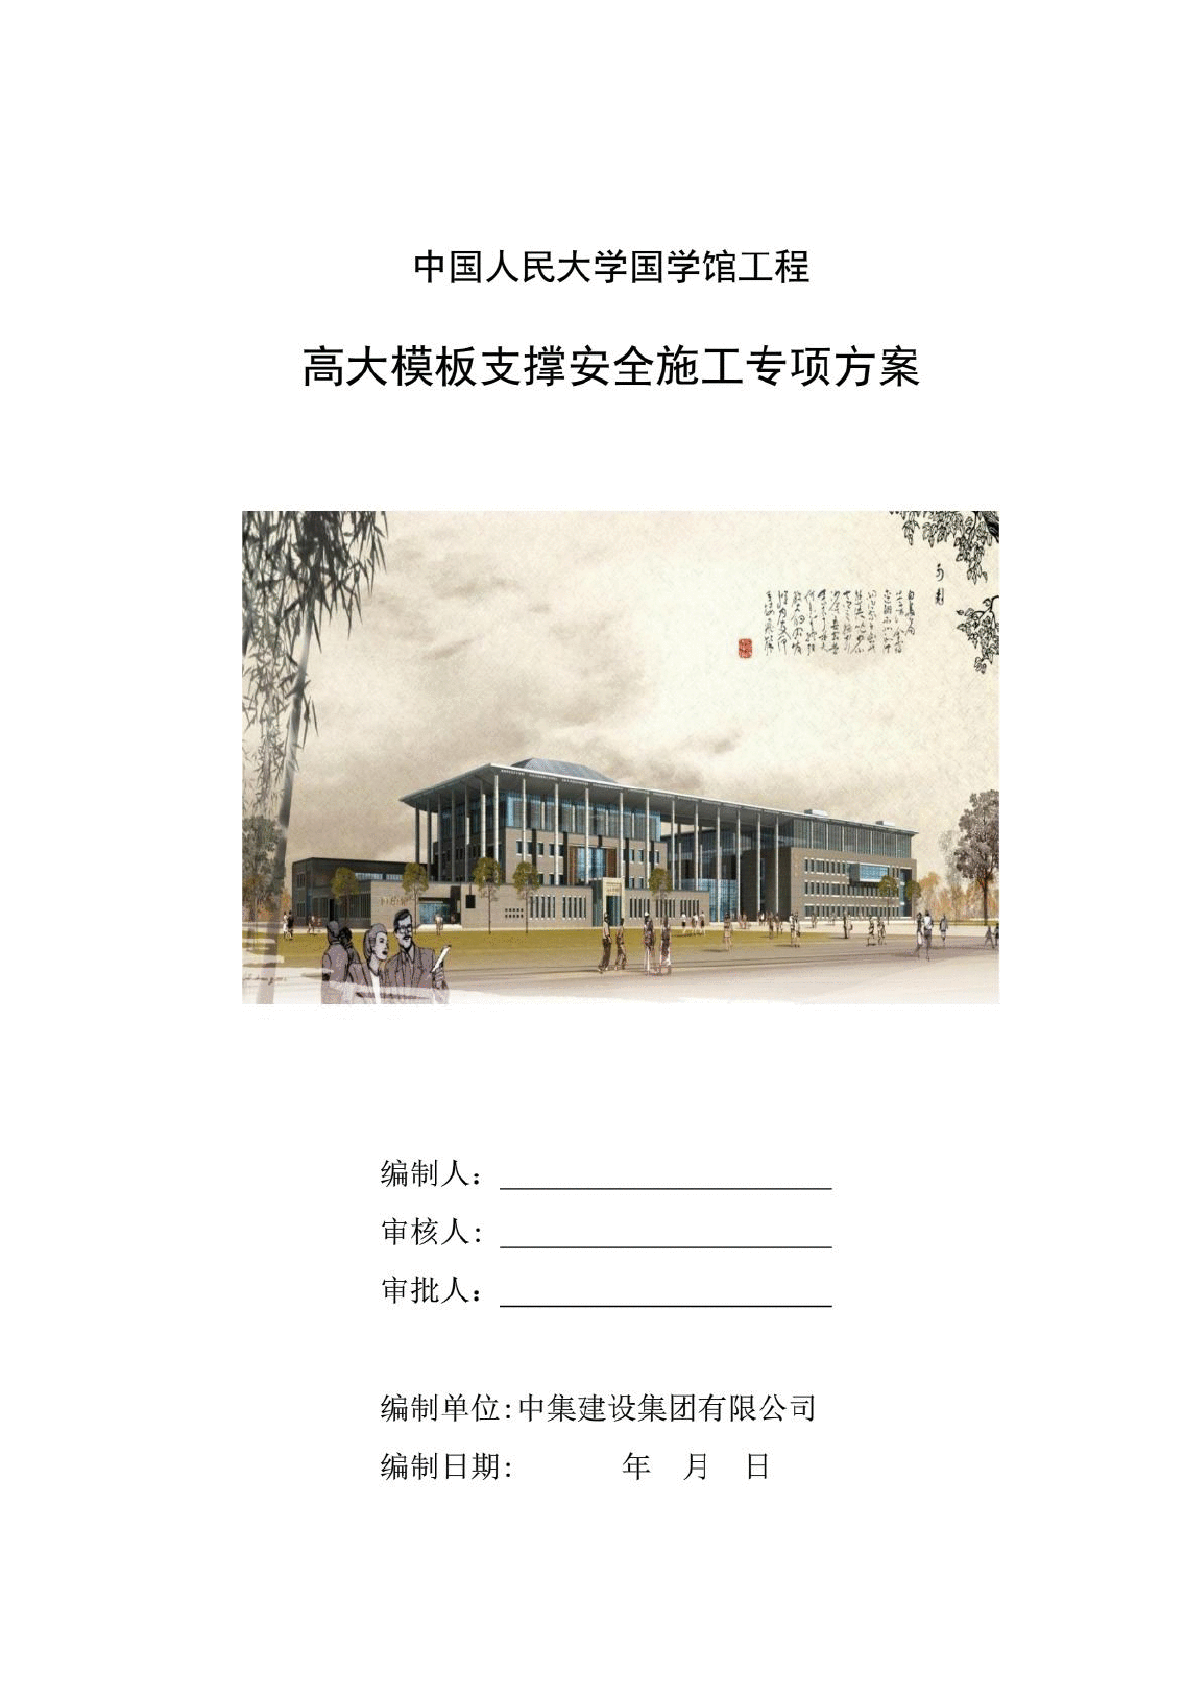 中国人民大学国学馆工程高大模板支撑安全施工专项方案-图一